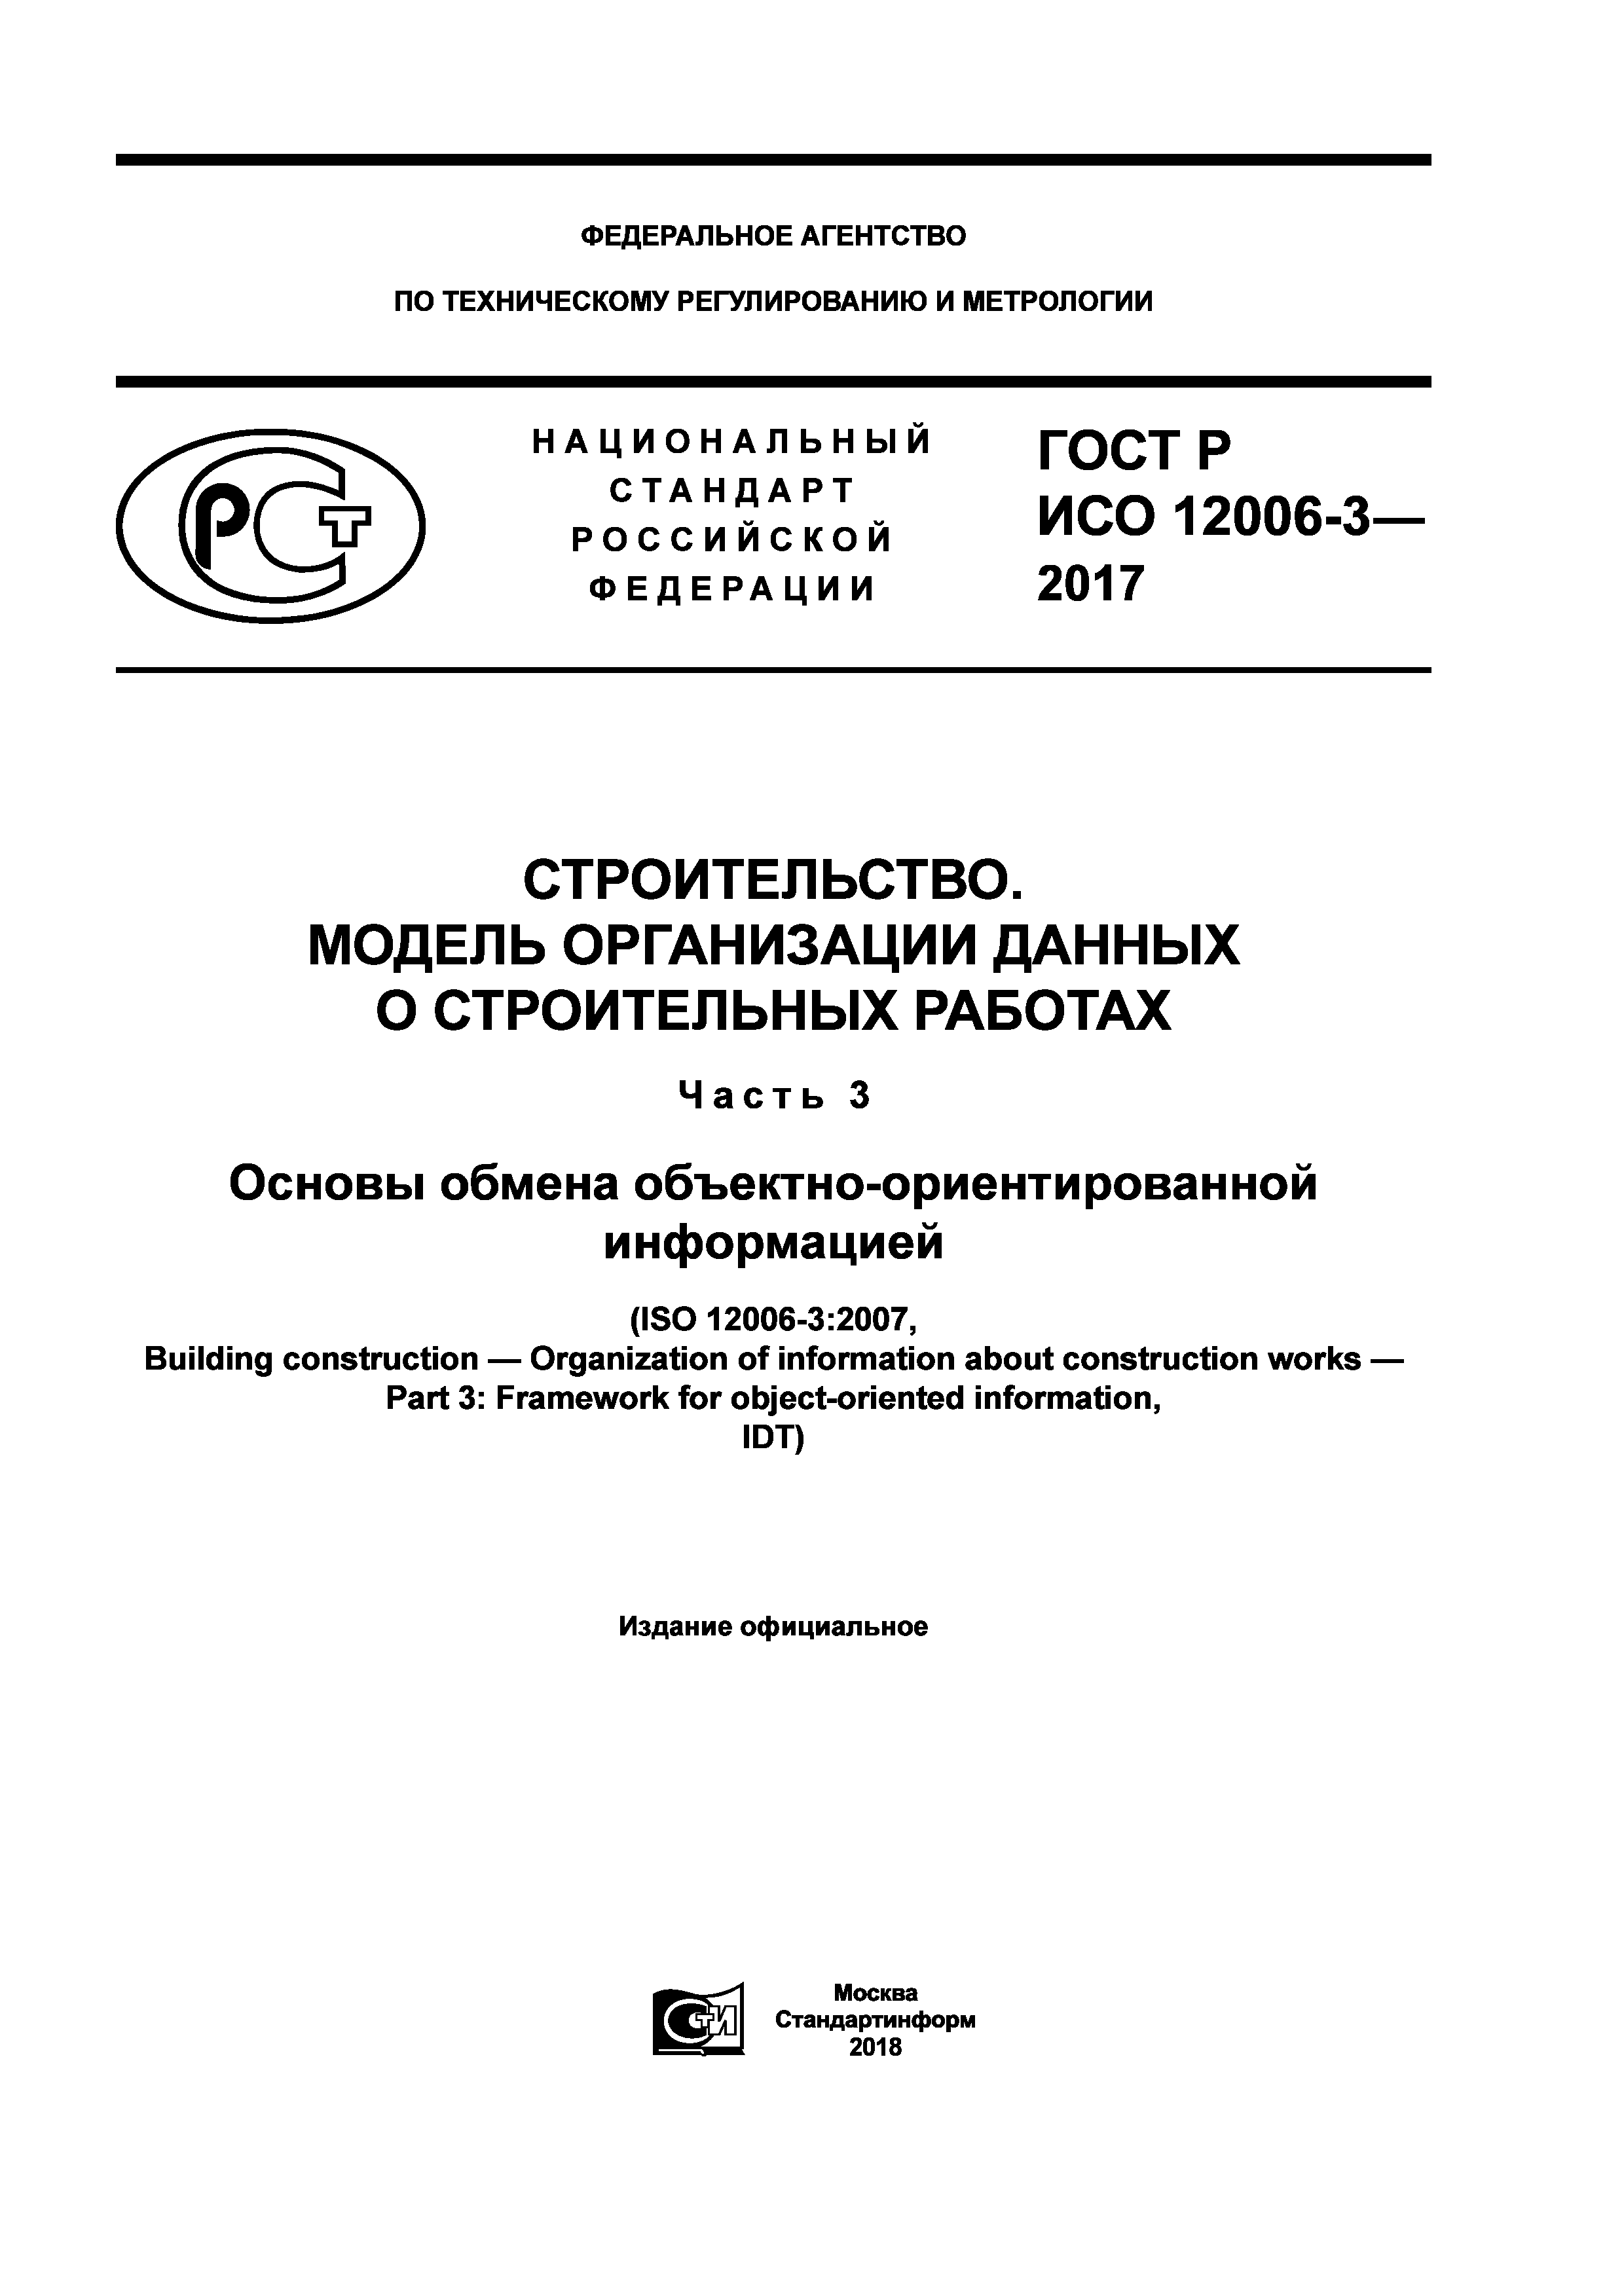 ГОСТ Р ИСО 12006-3-2017